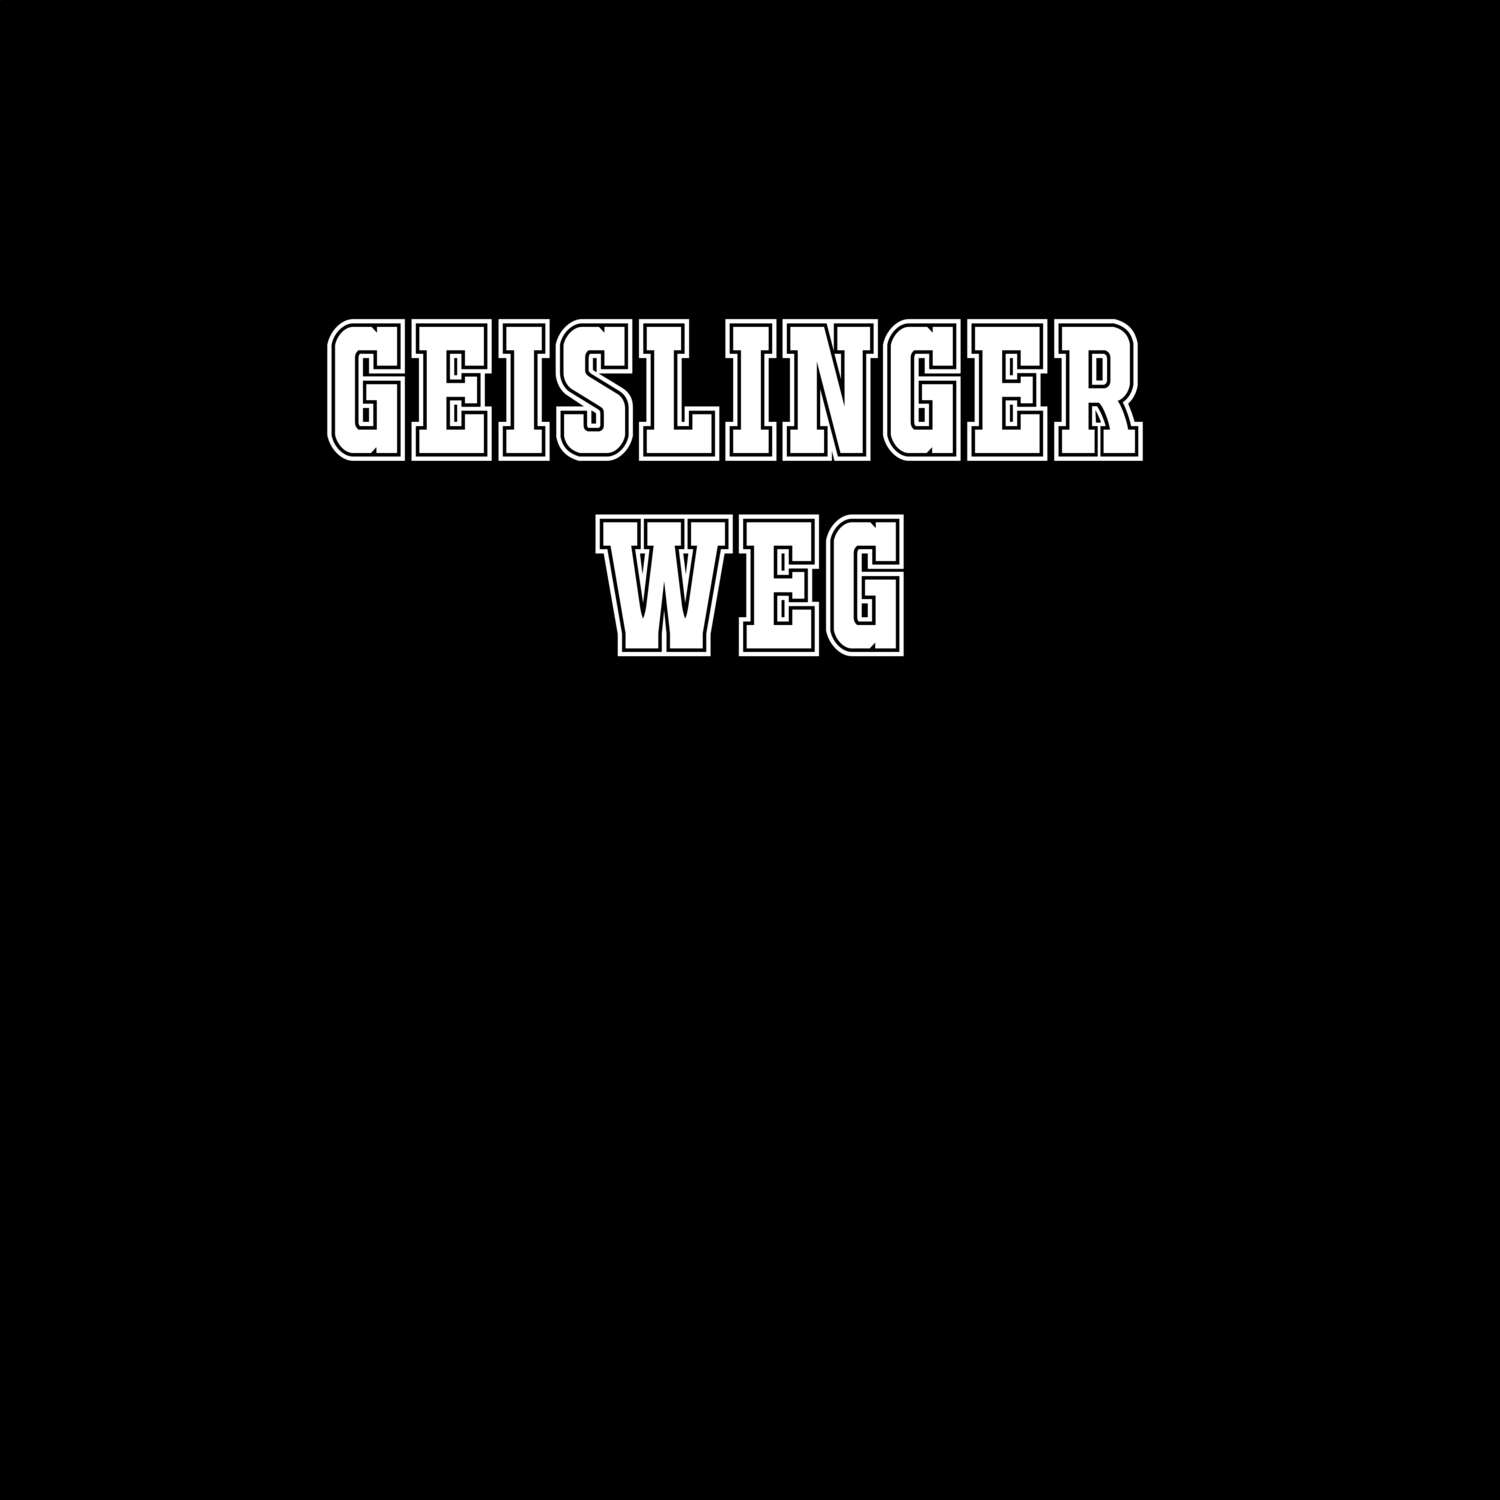 Geislinger Weg T-Shirt »Classic«